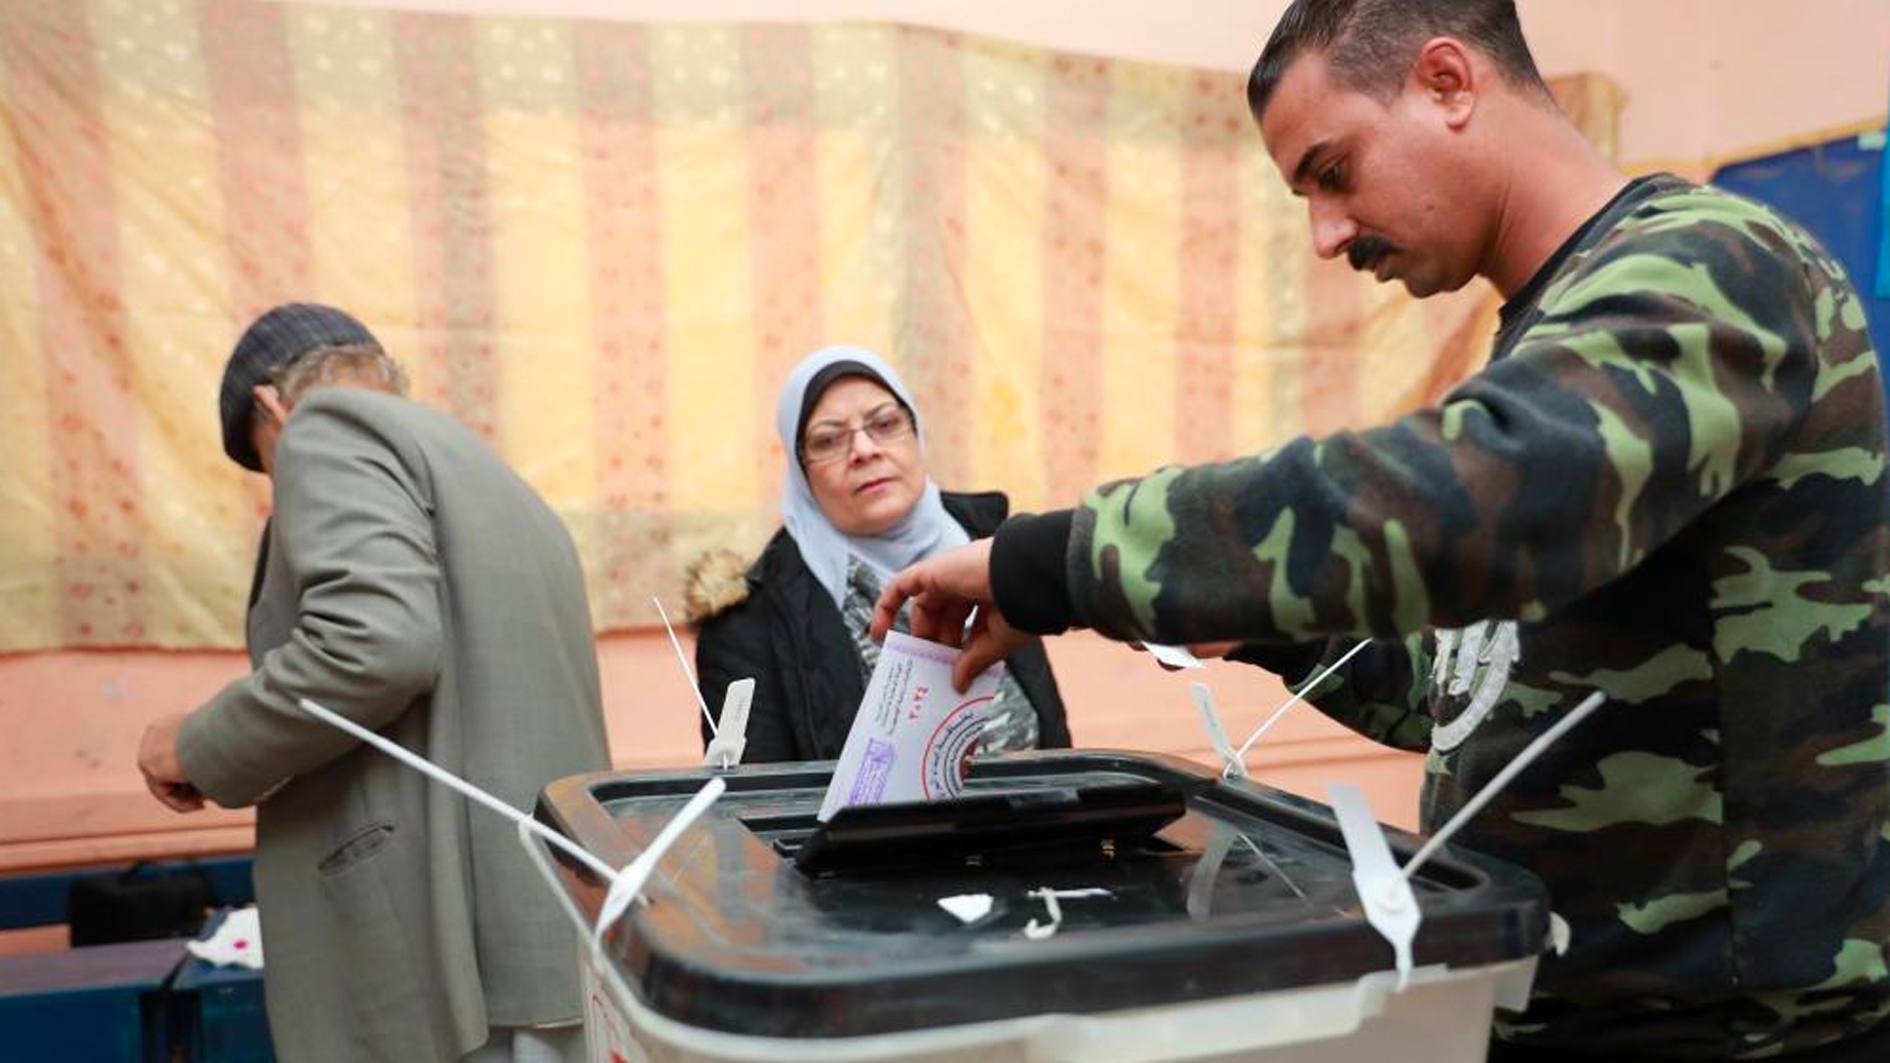 埃及总统大选投票展开 选民积极踊跃